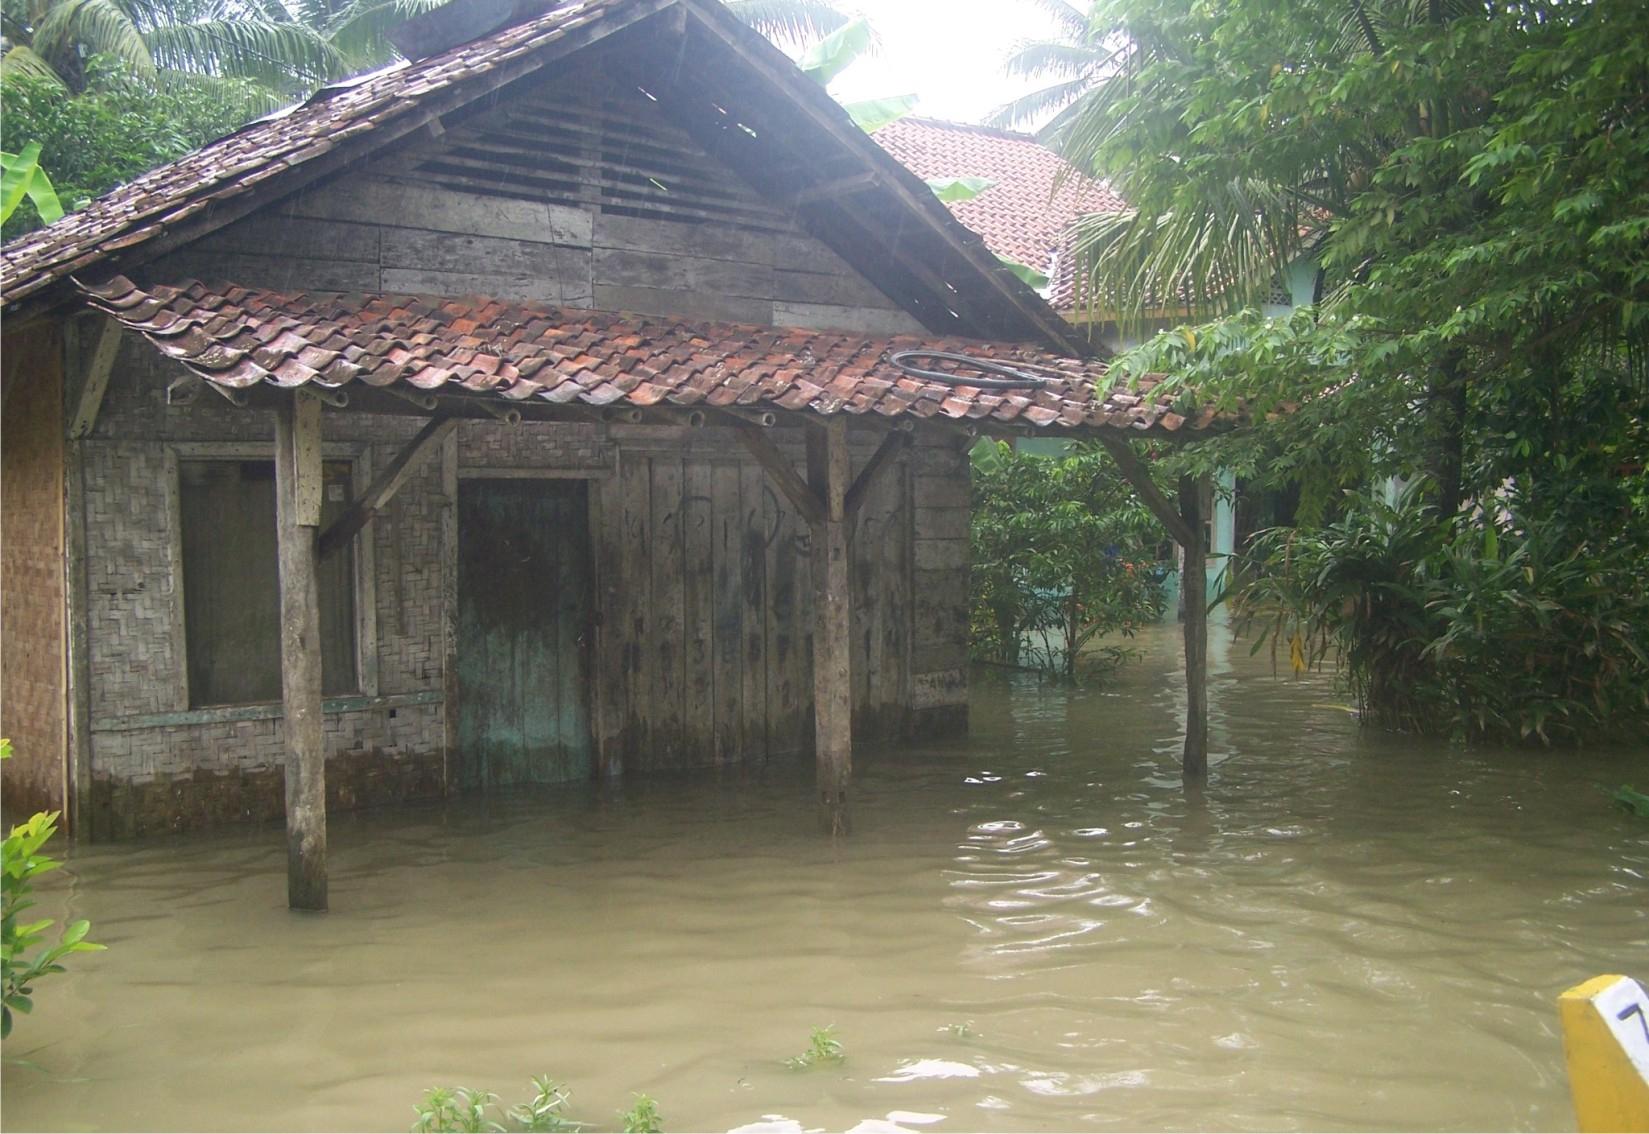 200an Lebih Kepala Keluarga di Cilacap Terdampak Banjir